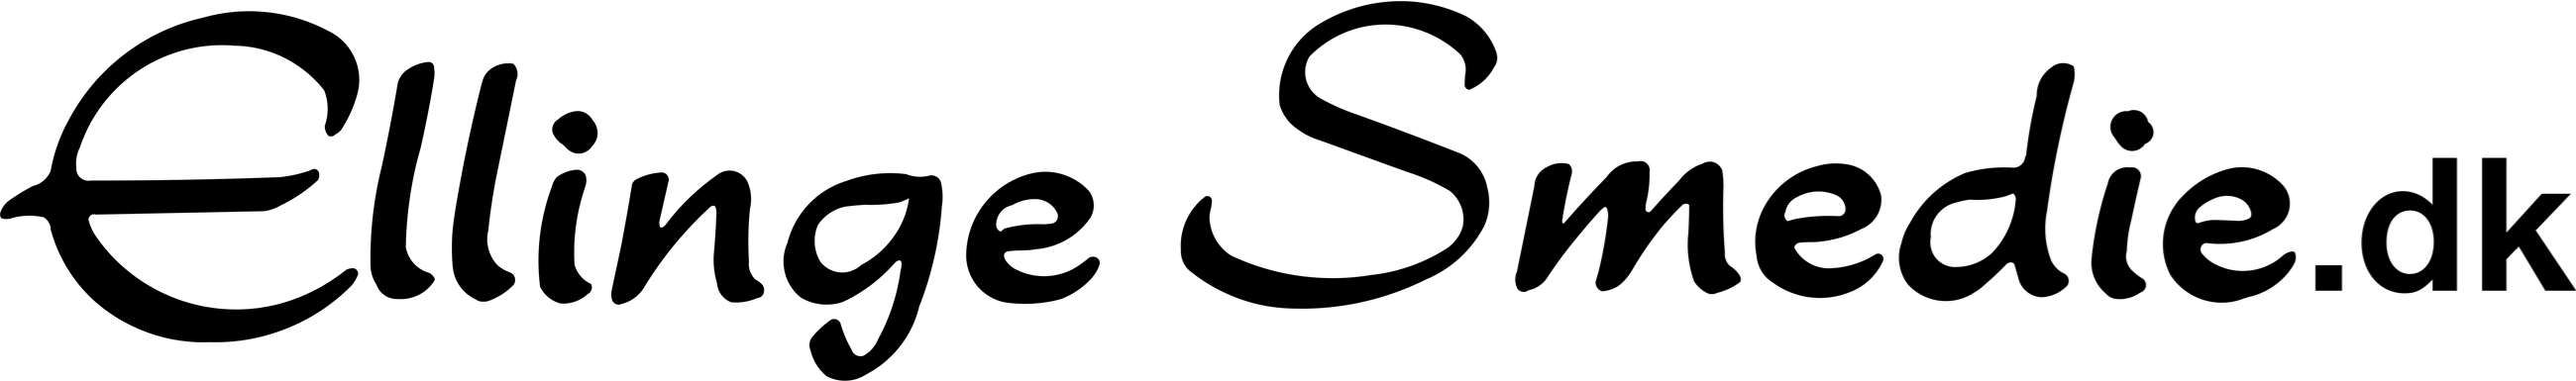 logo-uden-gul